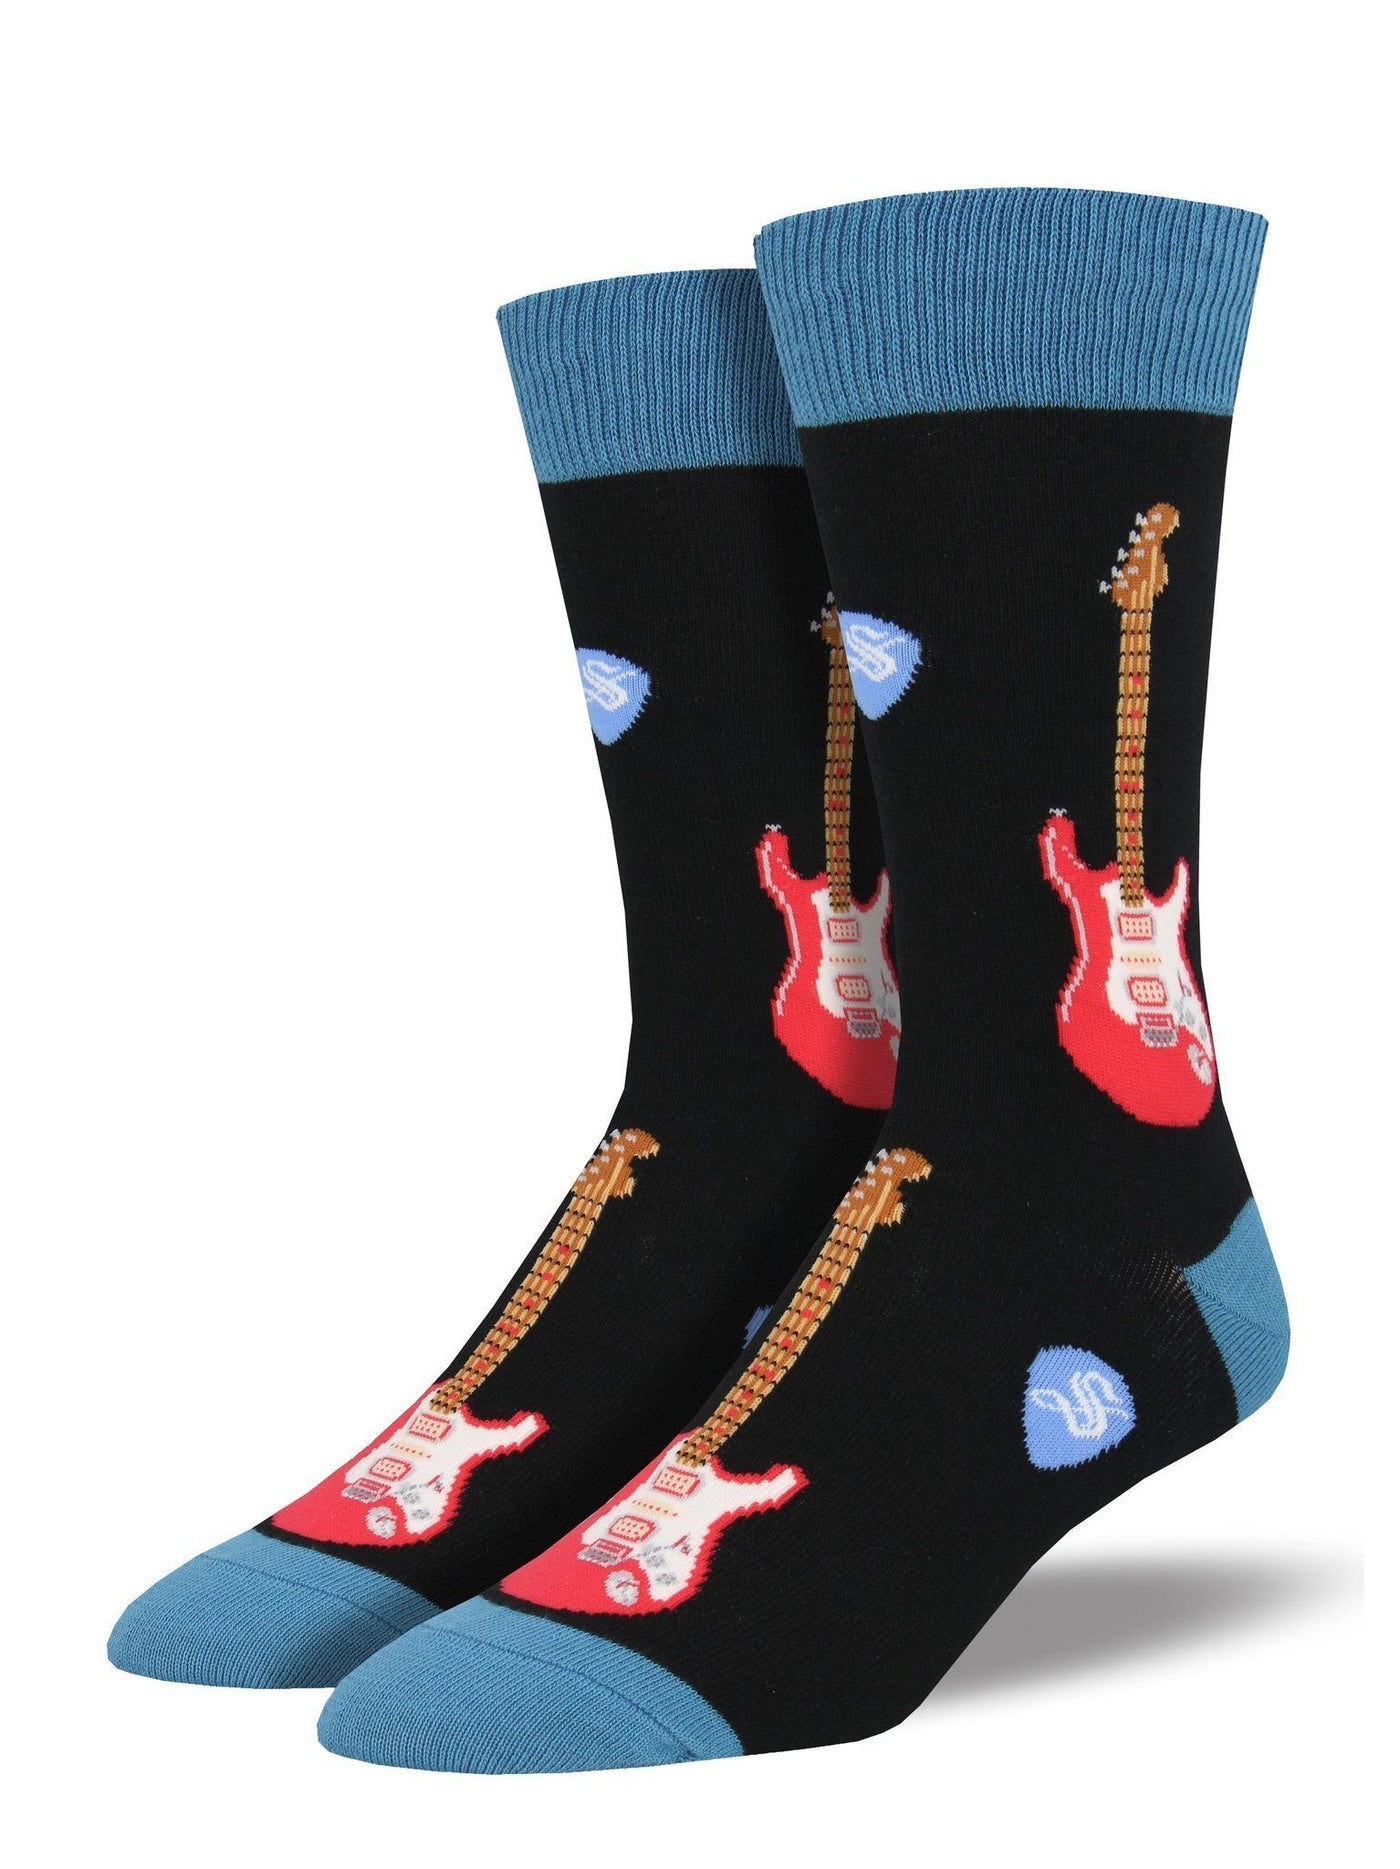 Socksmith - Electric Guitars Crew Socks | Men's - Knock Your Socks Off